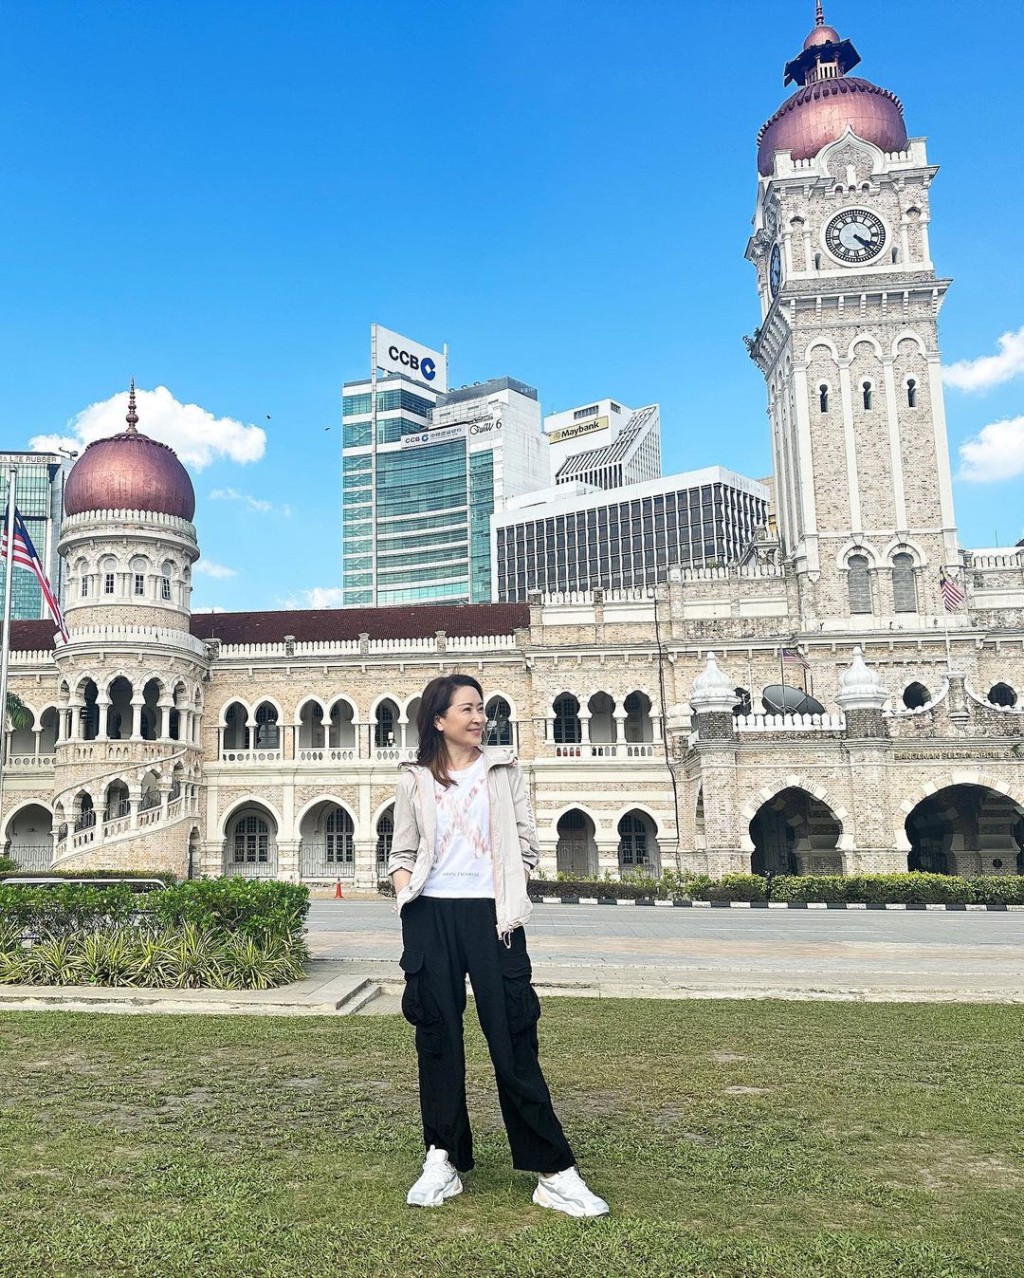 龚慈恩近日为TVB新剧《家族荣耀之继承者》飞赴马来西亚取景。